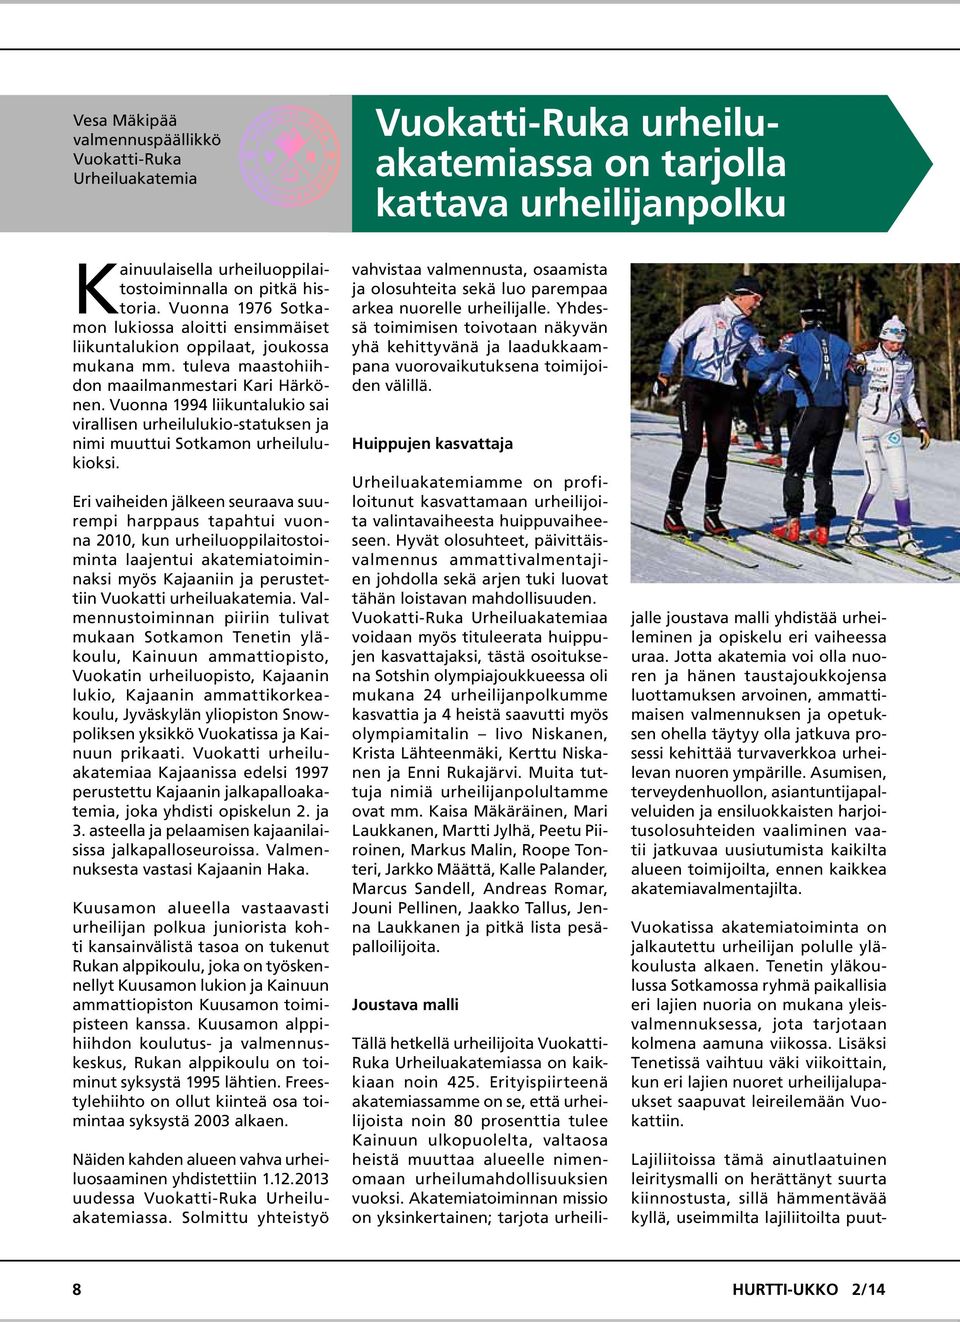 Vuonna 1994 liikuntalukio sai virallisen urheilulukio-statuksen ja nimi muuttui Sotkamon urheilulukioksi.